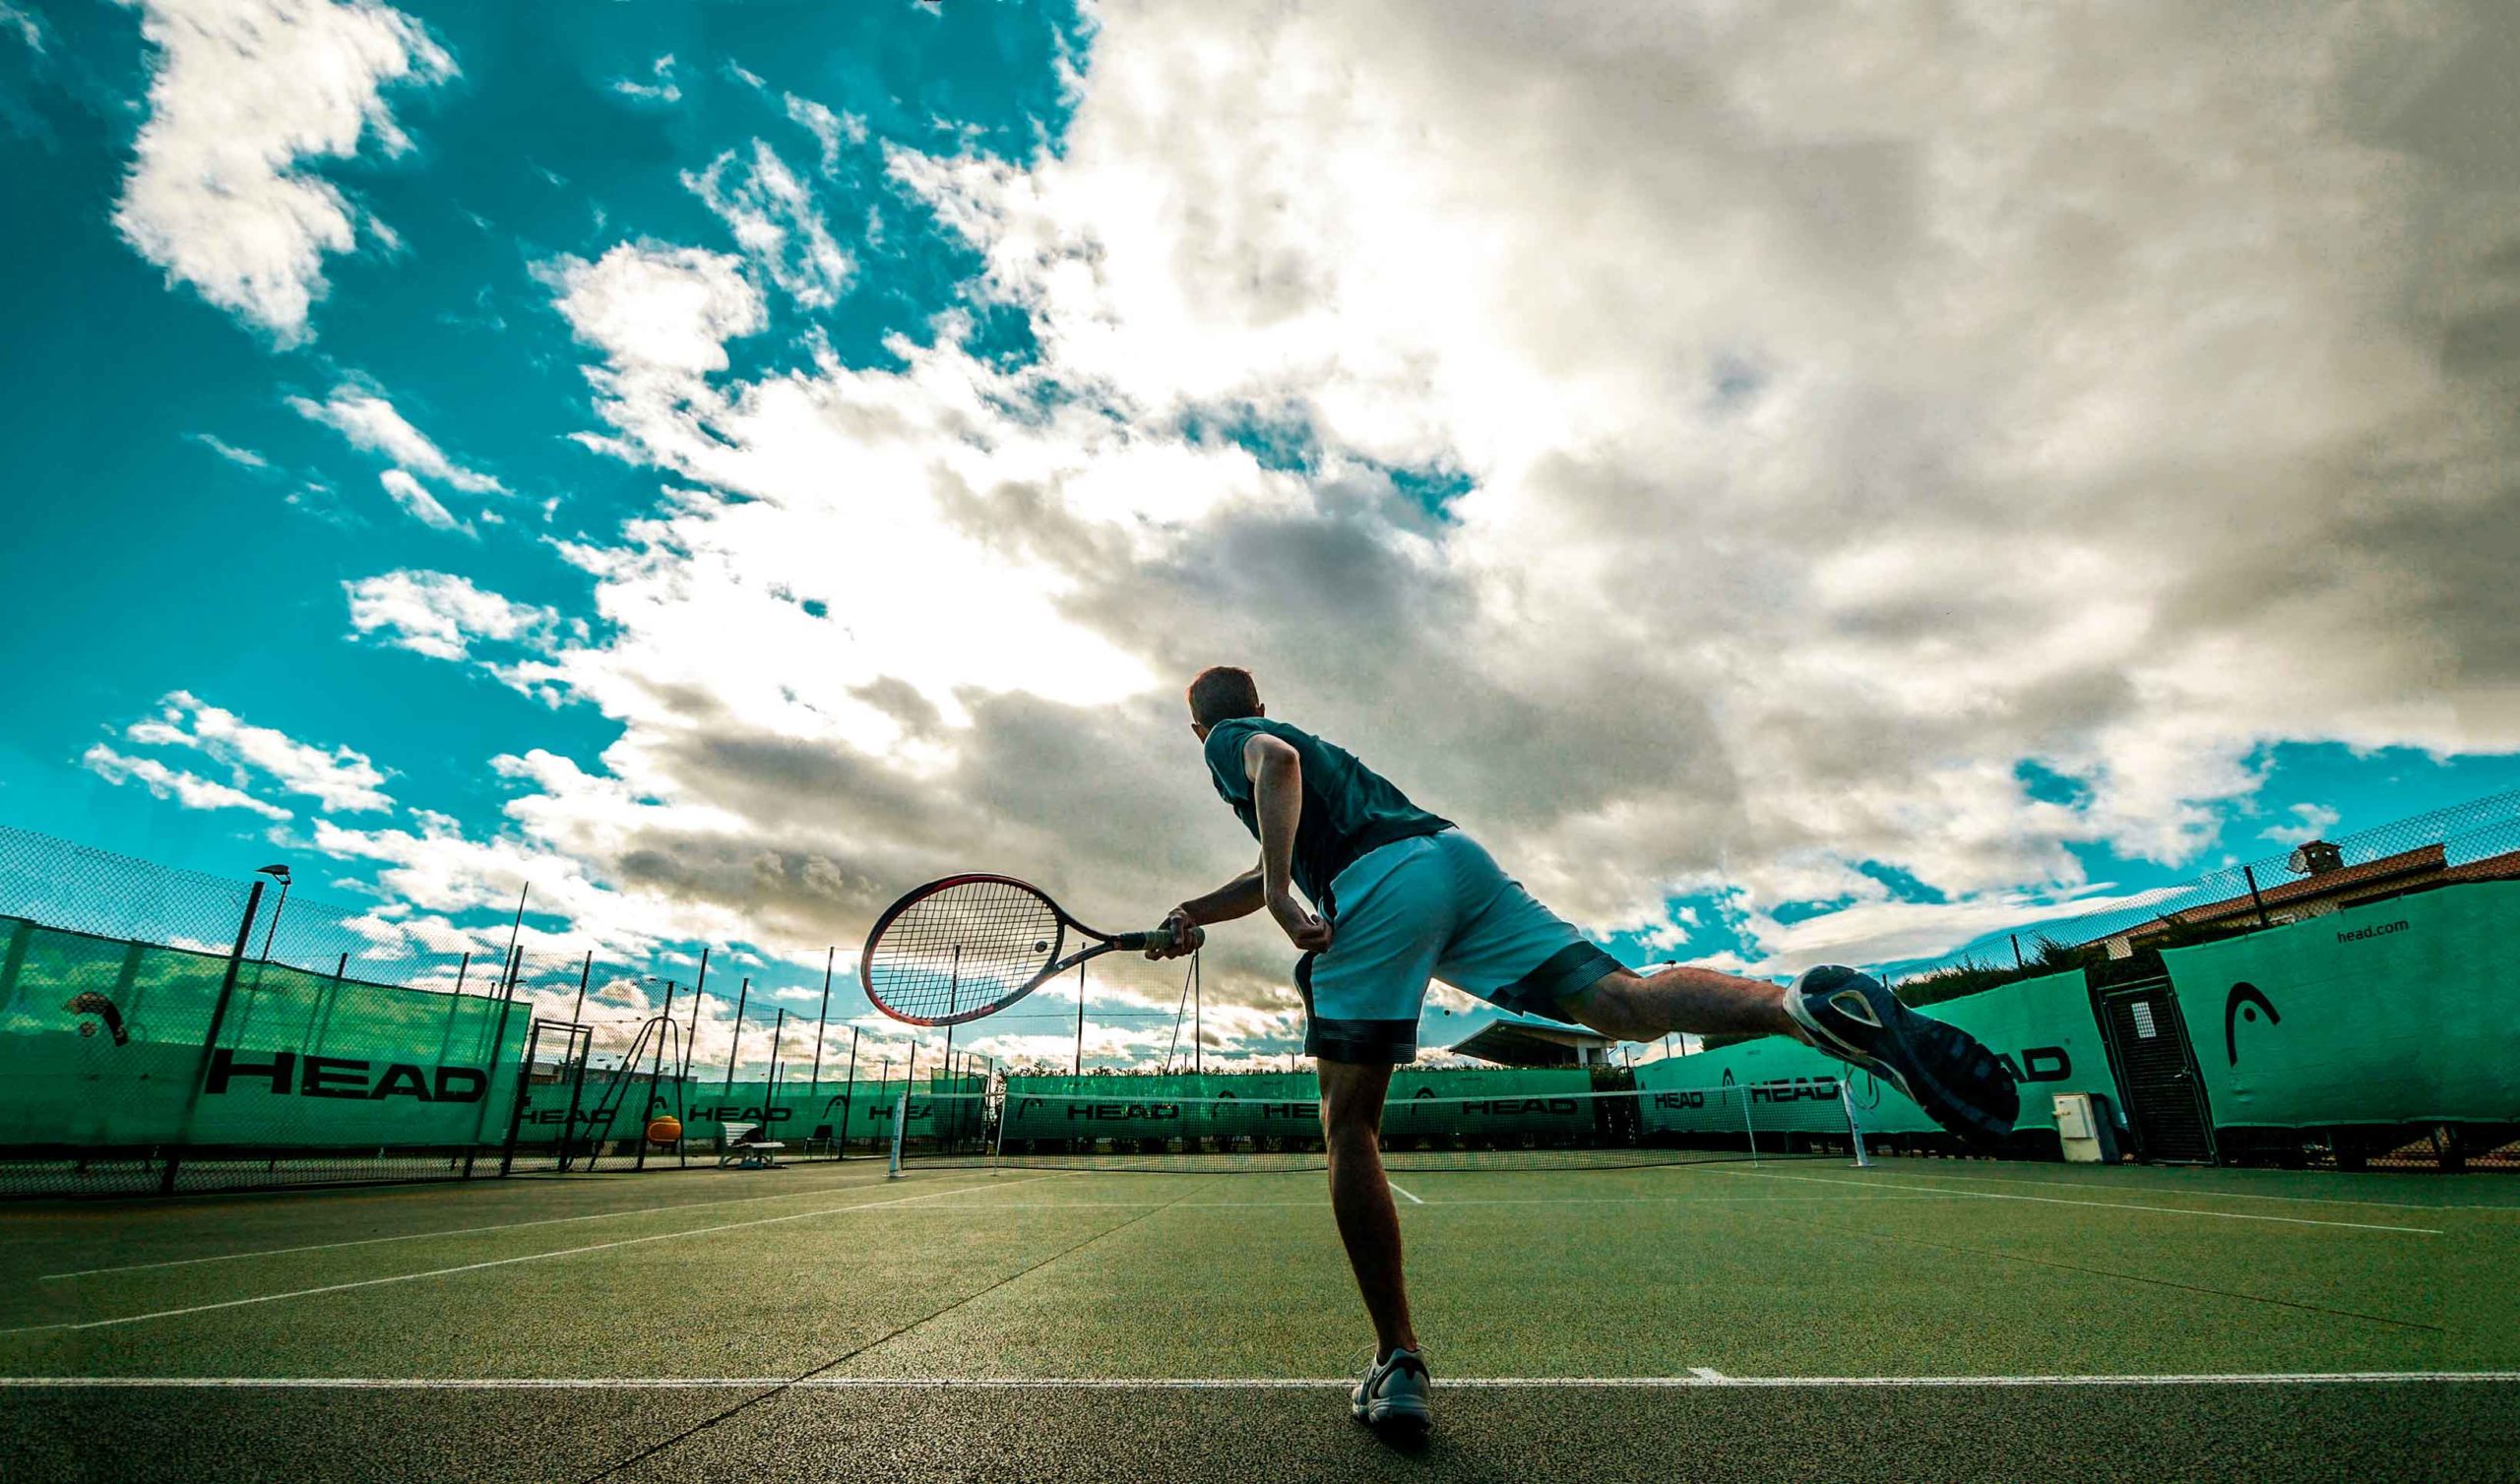 Foto eines Tennisspielers beim Aufschlag, von hinten aufgenommen